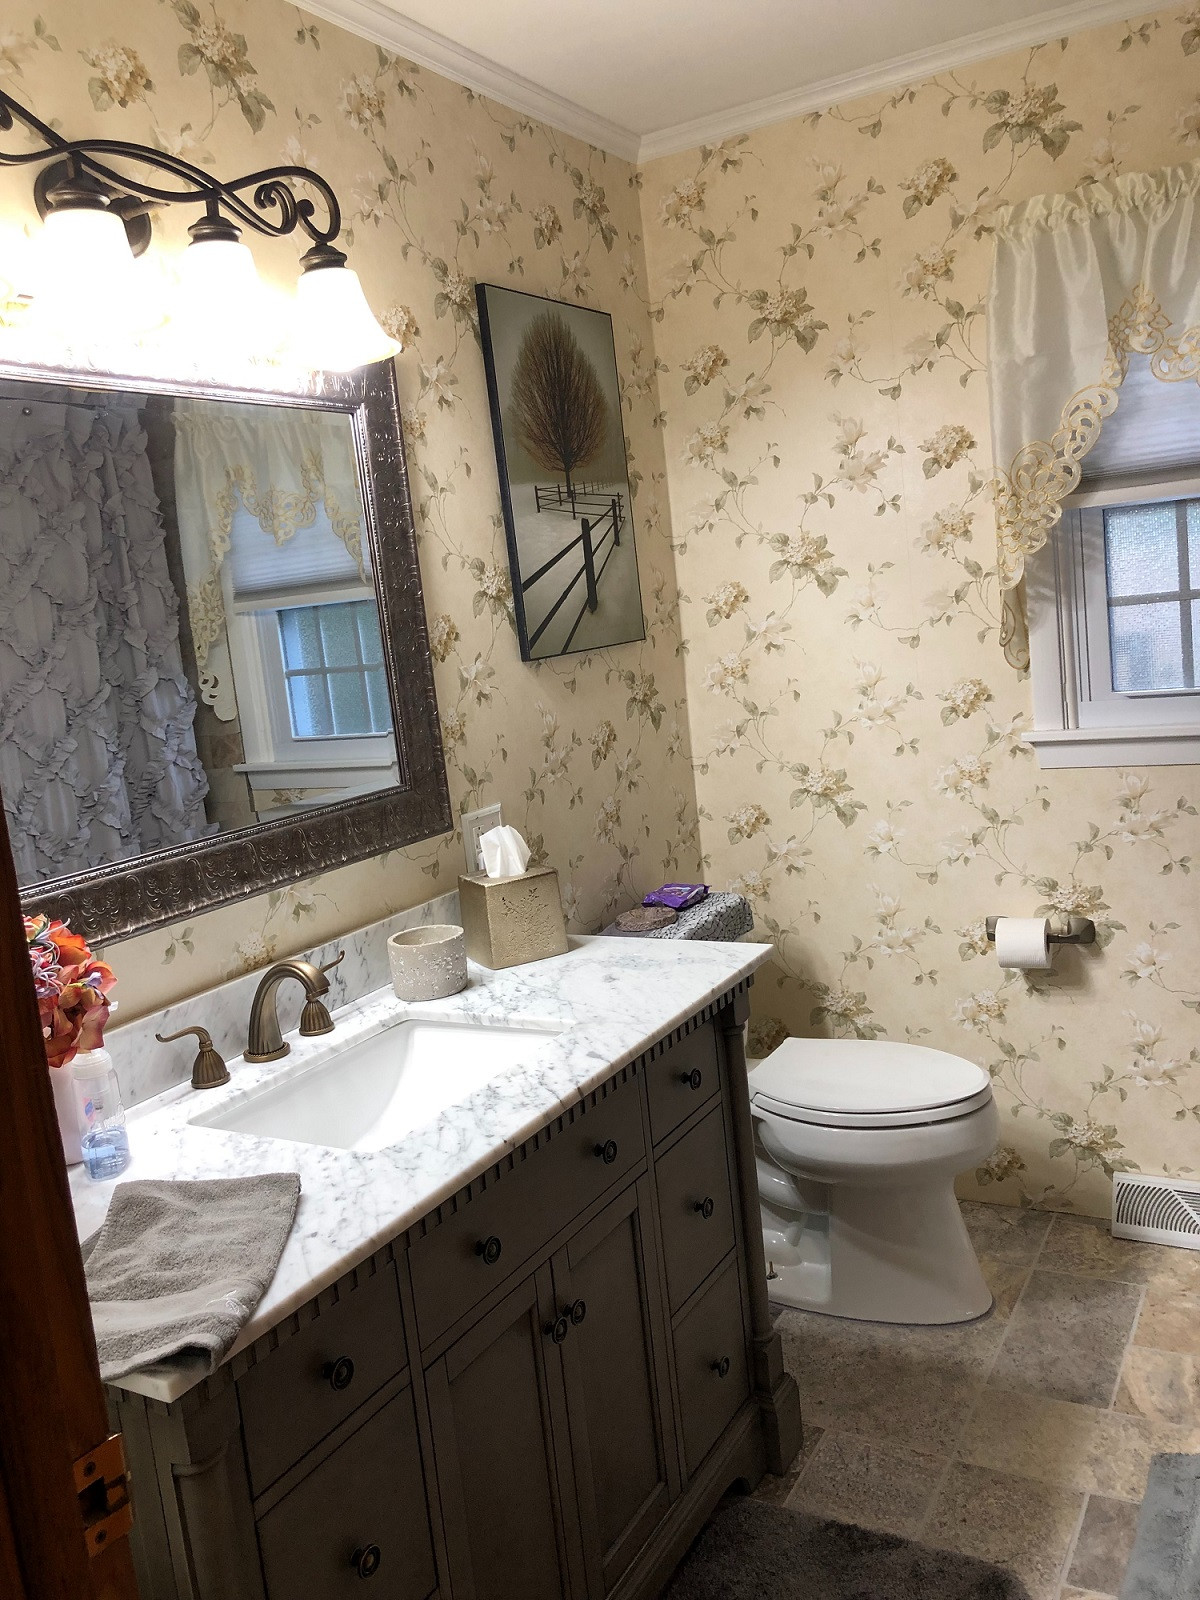 Bathroom Wallpaper Waterproof
 Is Wallpaper Waterproof